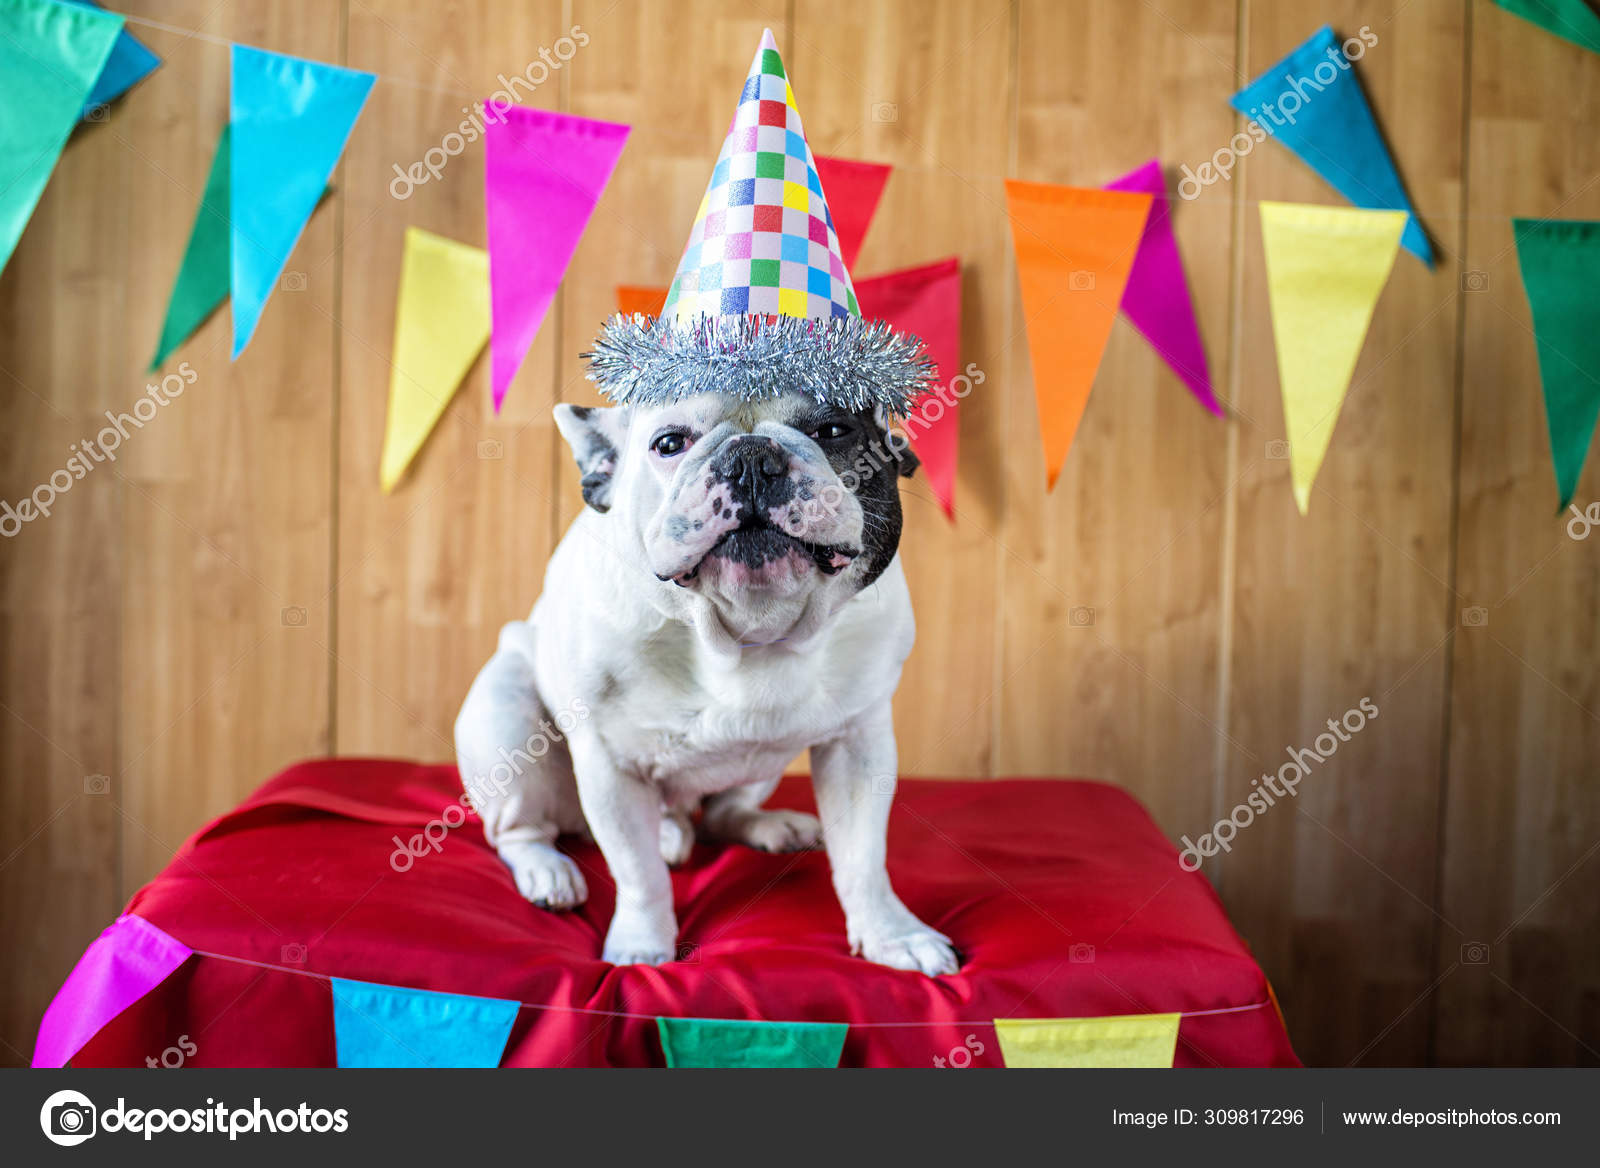 Dog dressed for party Stock Photo by ©kiko_jimenez 309817296